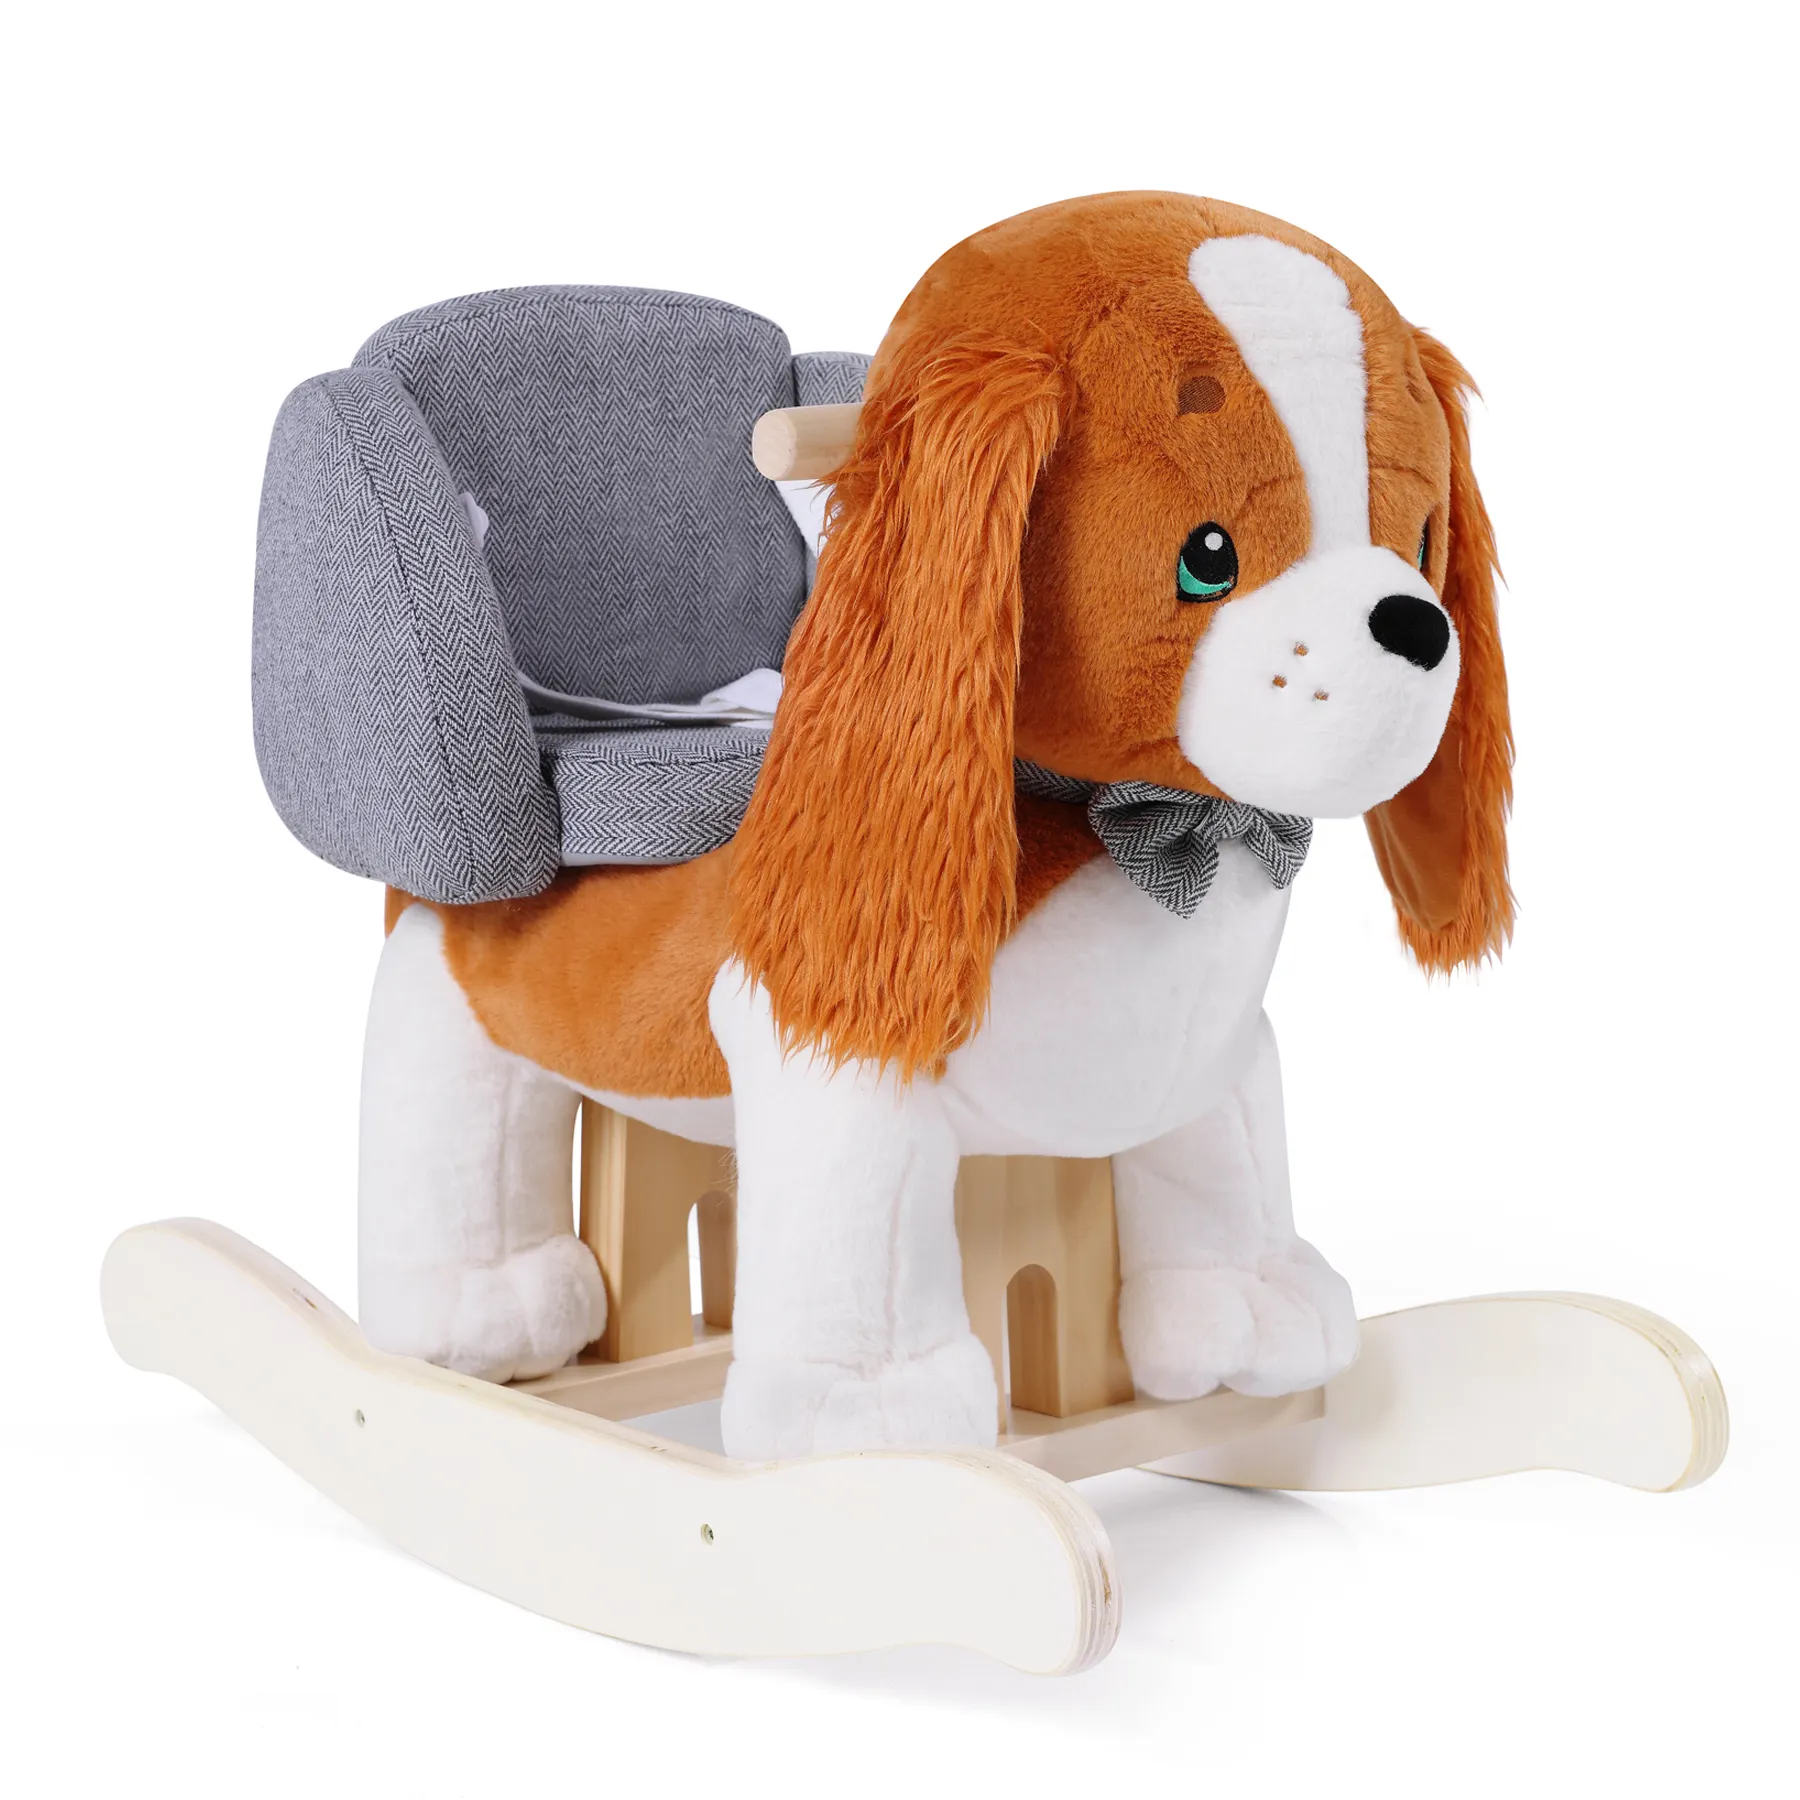 Tiktok Hot Cute Senior Brown Puppy Wooden King Charles Spaniel Rocking Horse for Children